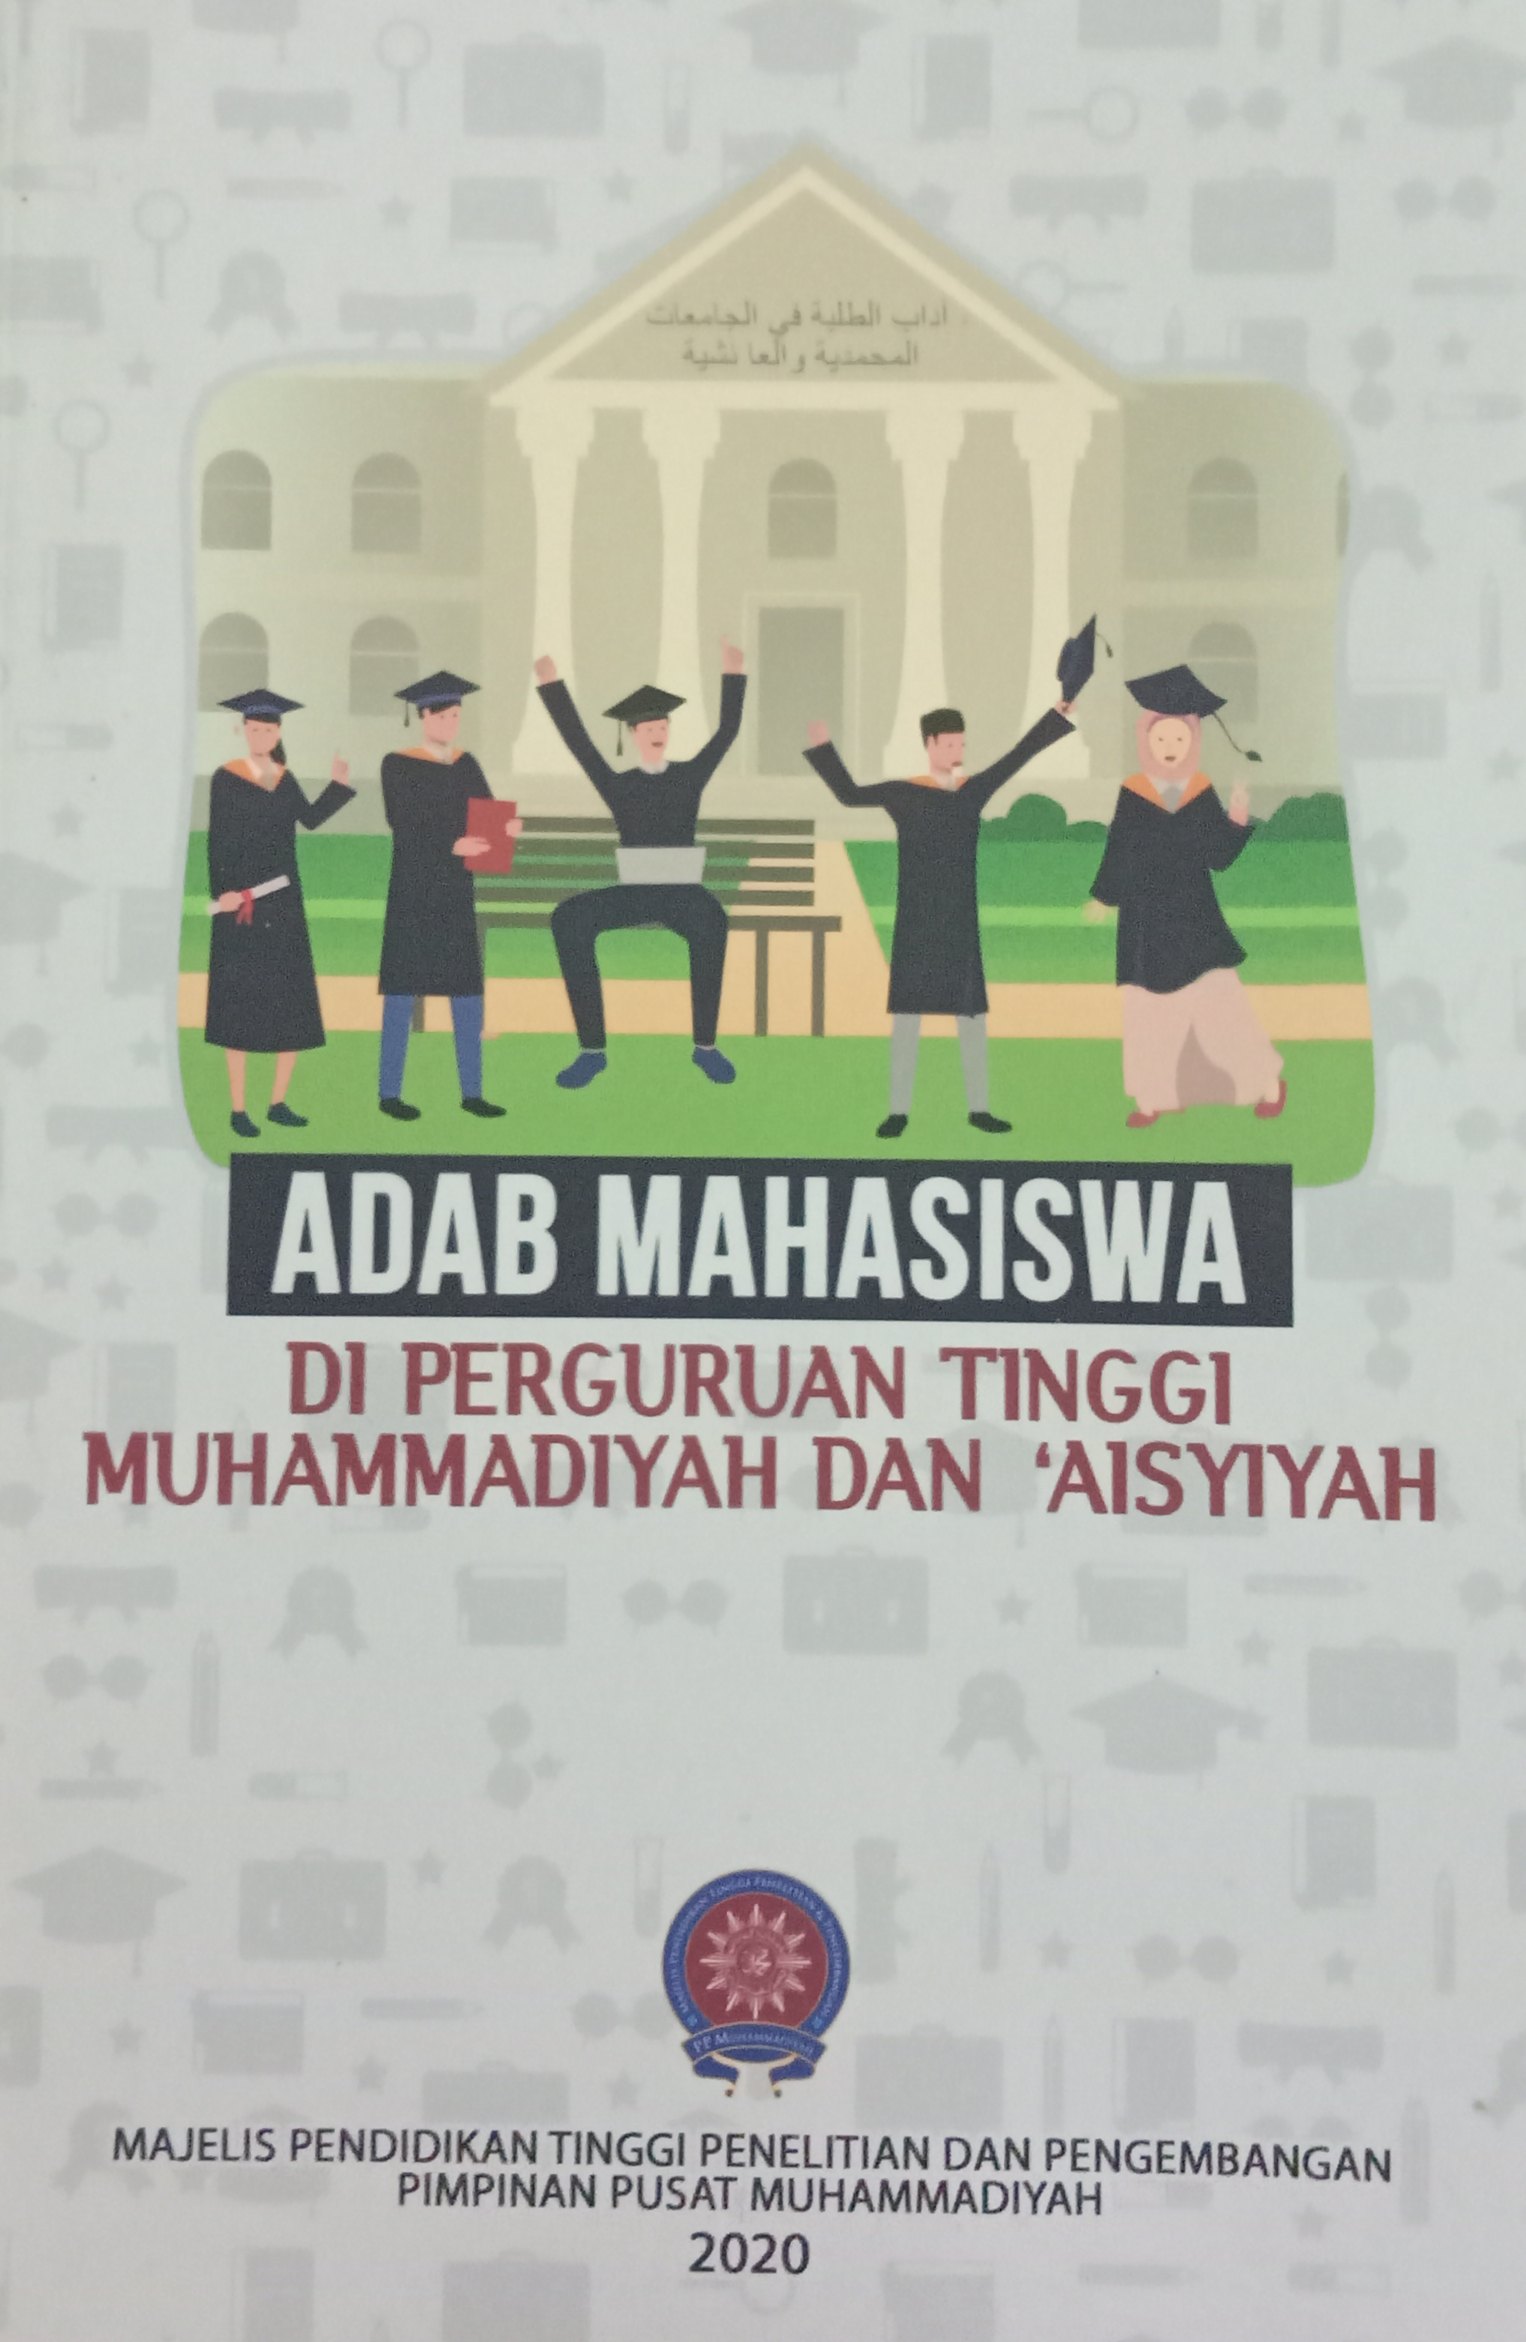 Adab Mahasiswa di Perguruan Tinggi Muhammadiyah dan 'Aisyiyah